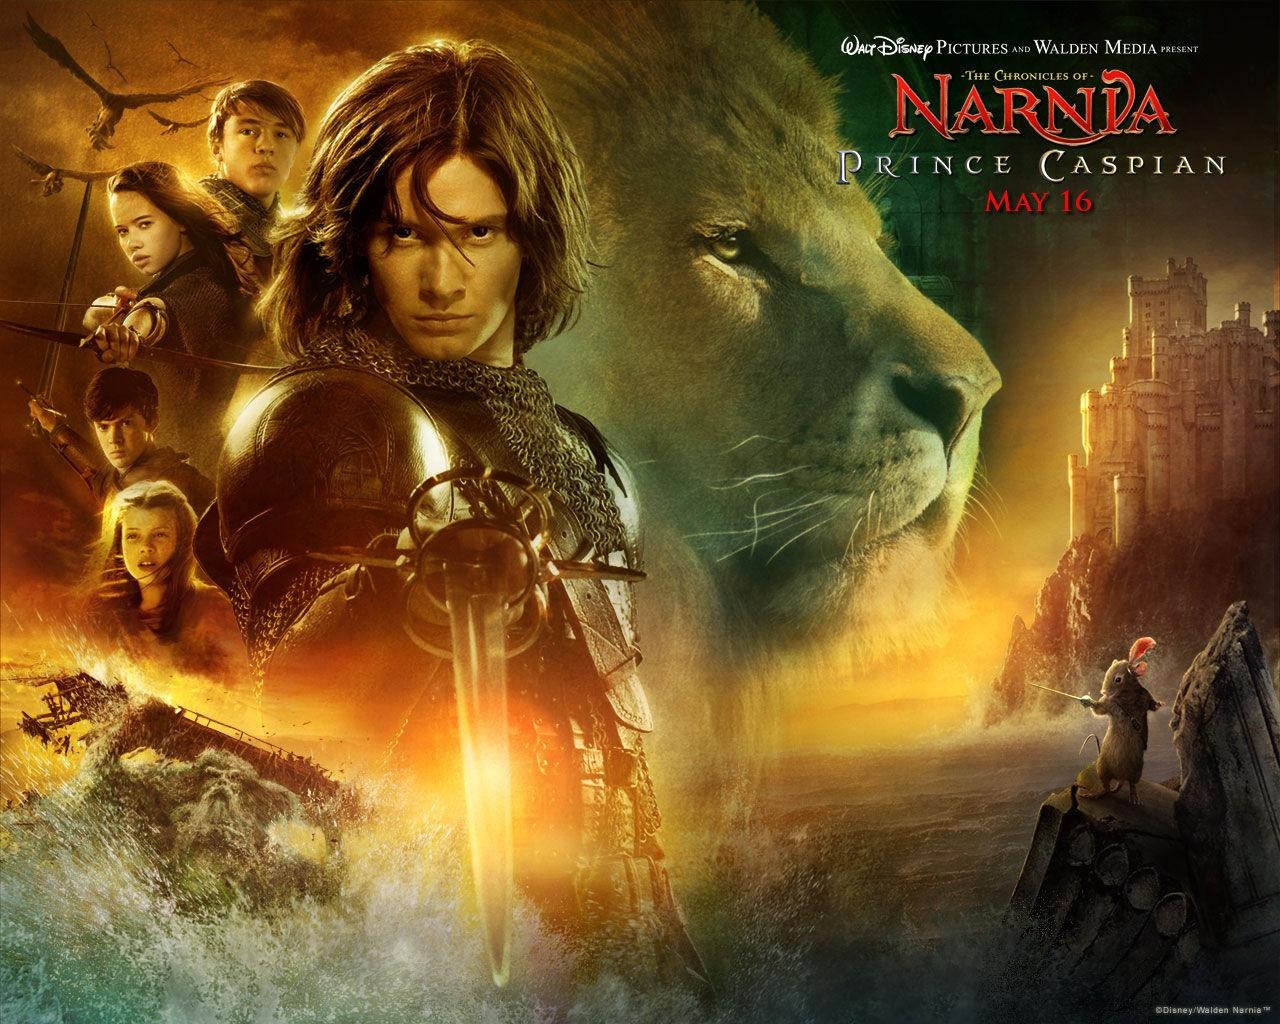 Las Crónicas de Narnia 2: El Príncipe Caspian #3 - 1280x1024